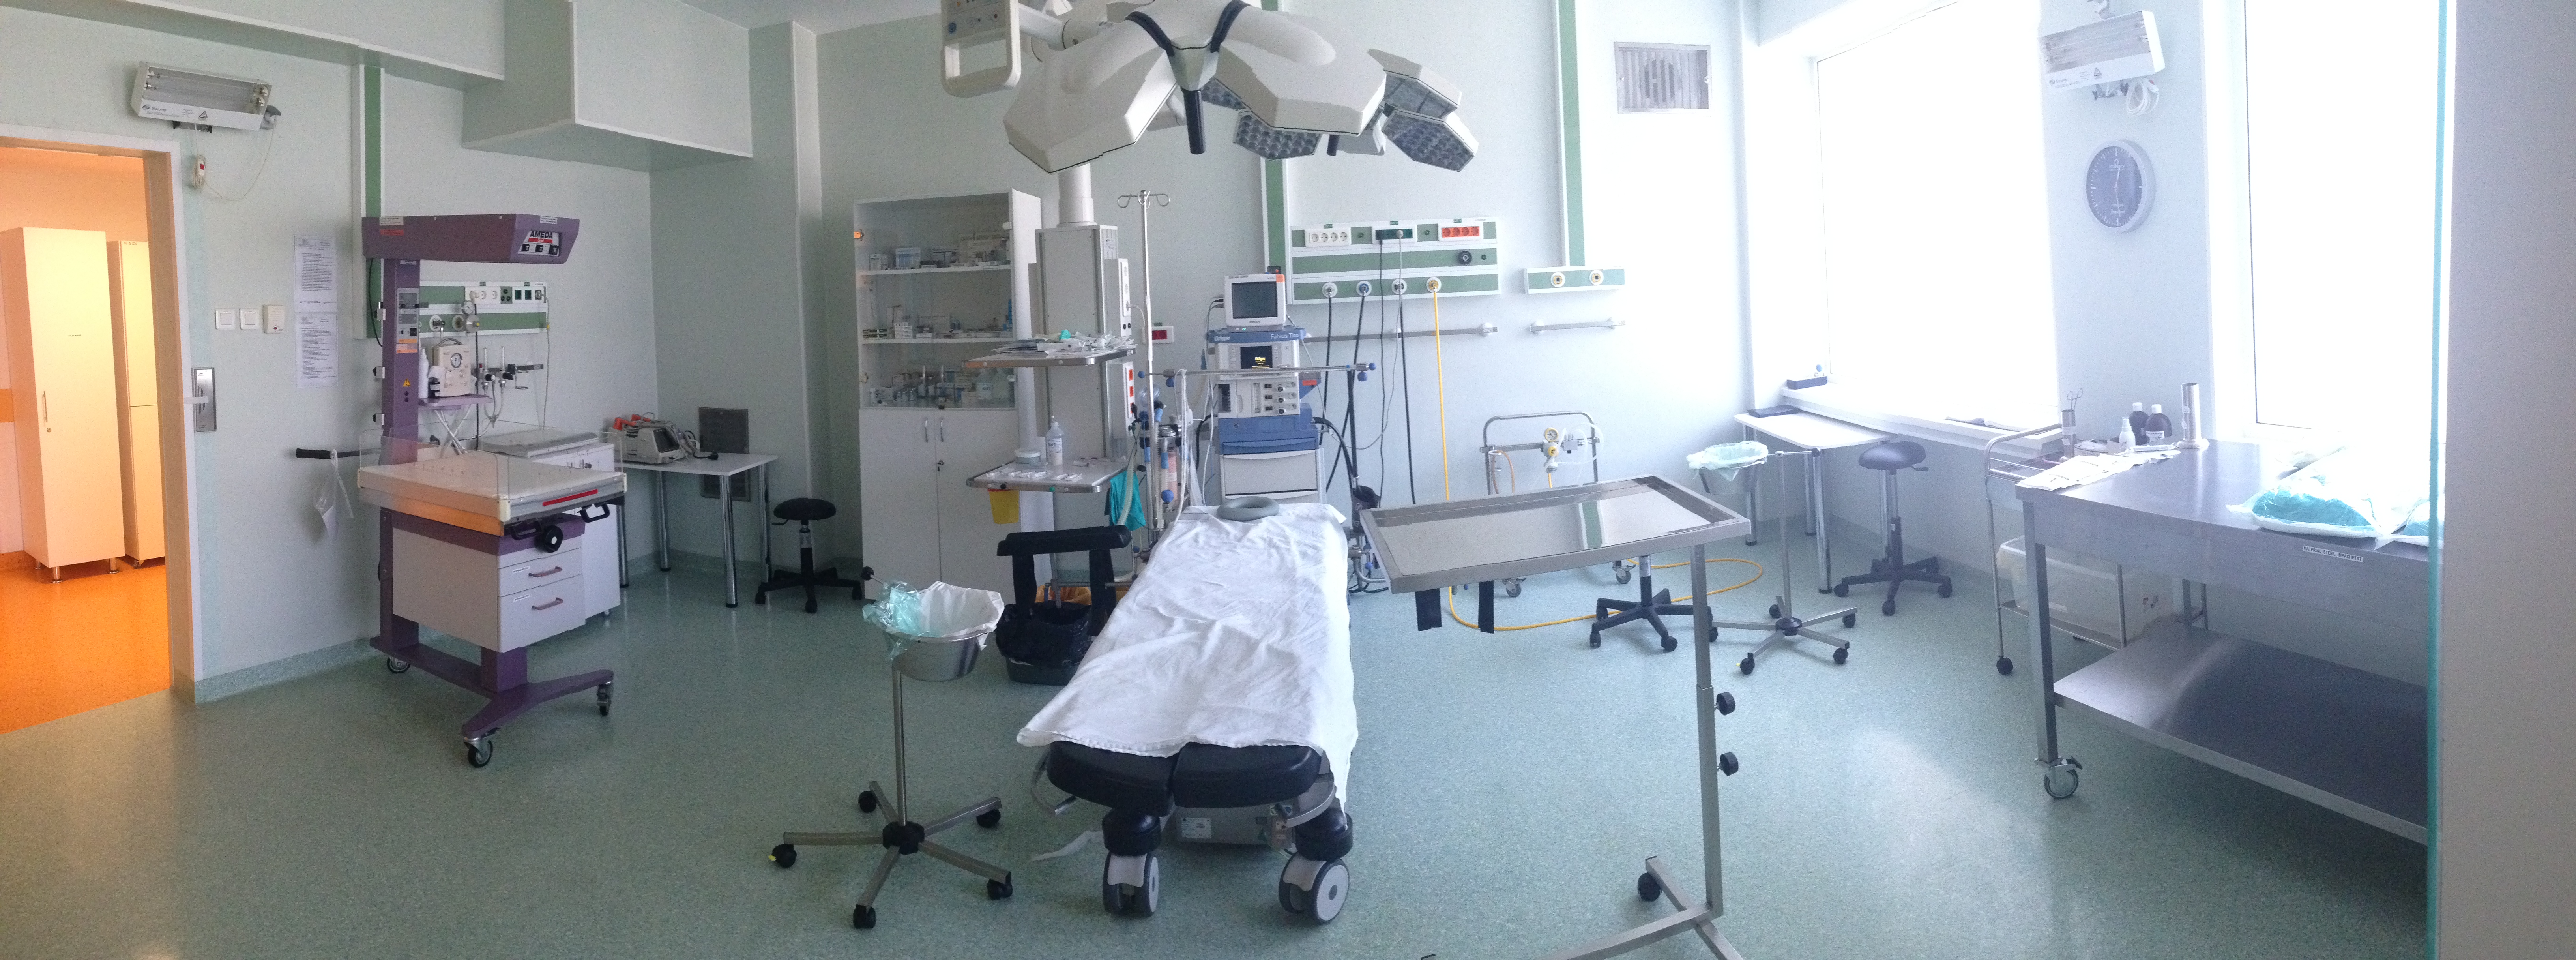 specializarea spitalului de maternitate)